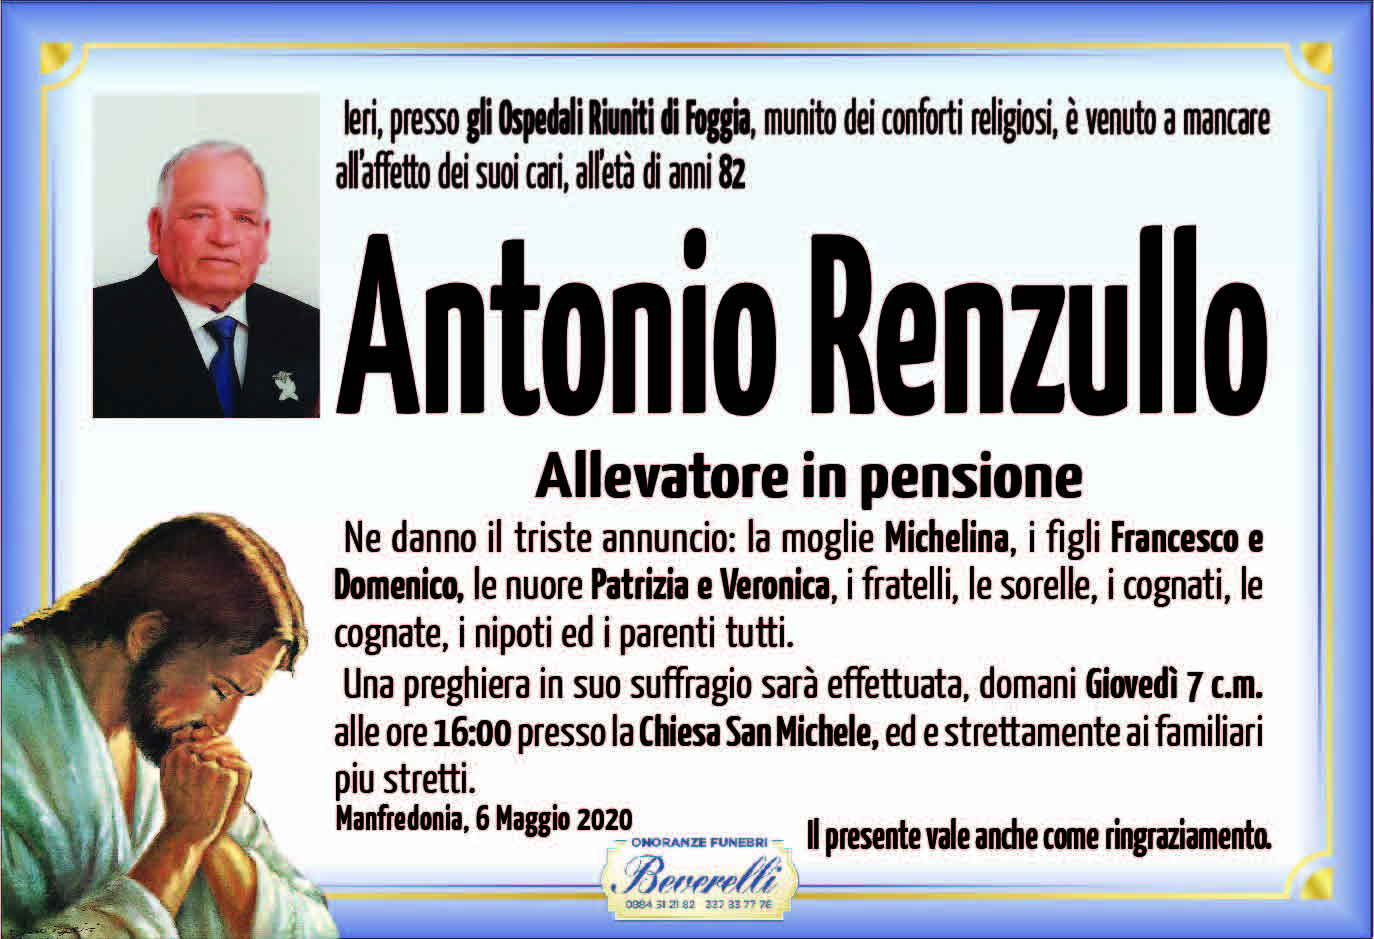 Antonio Renzullo